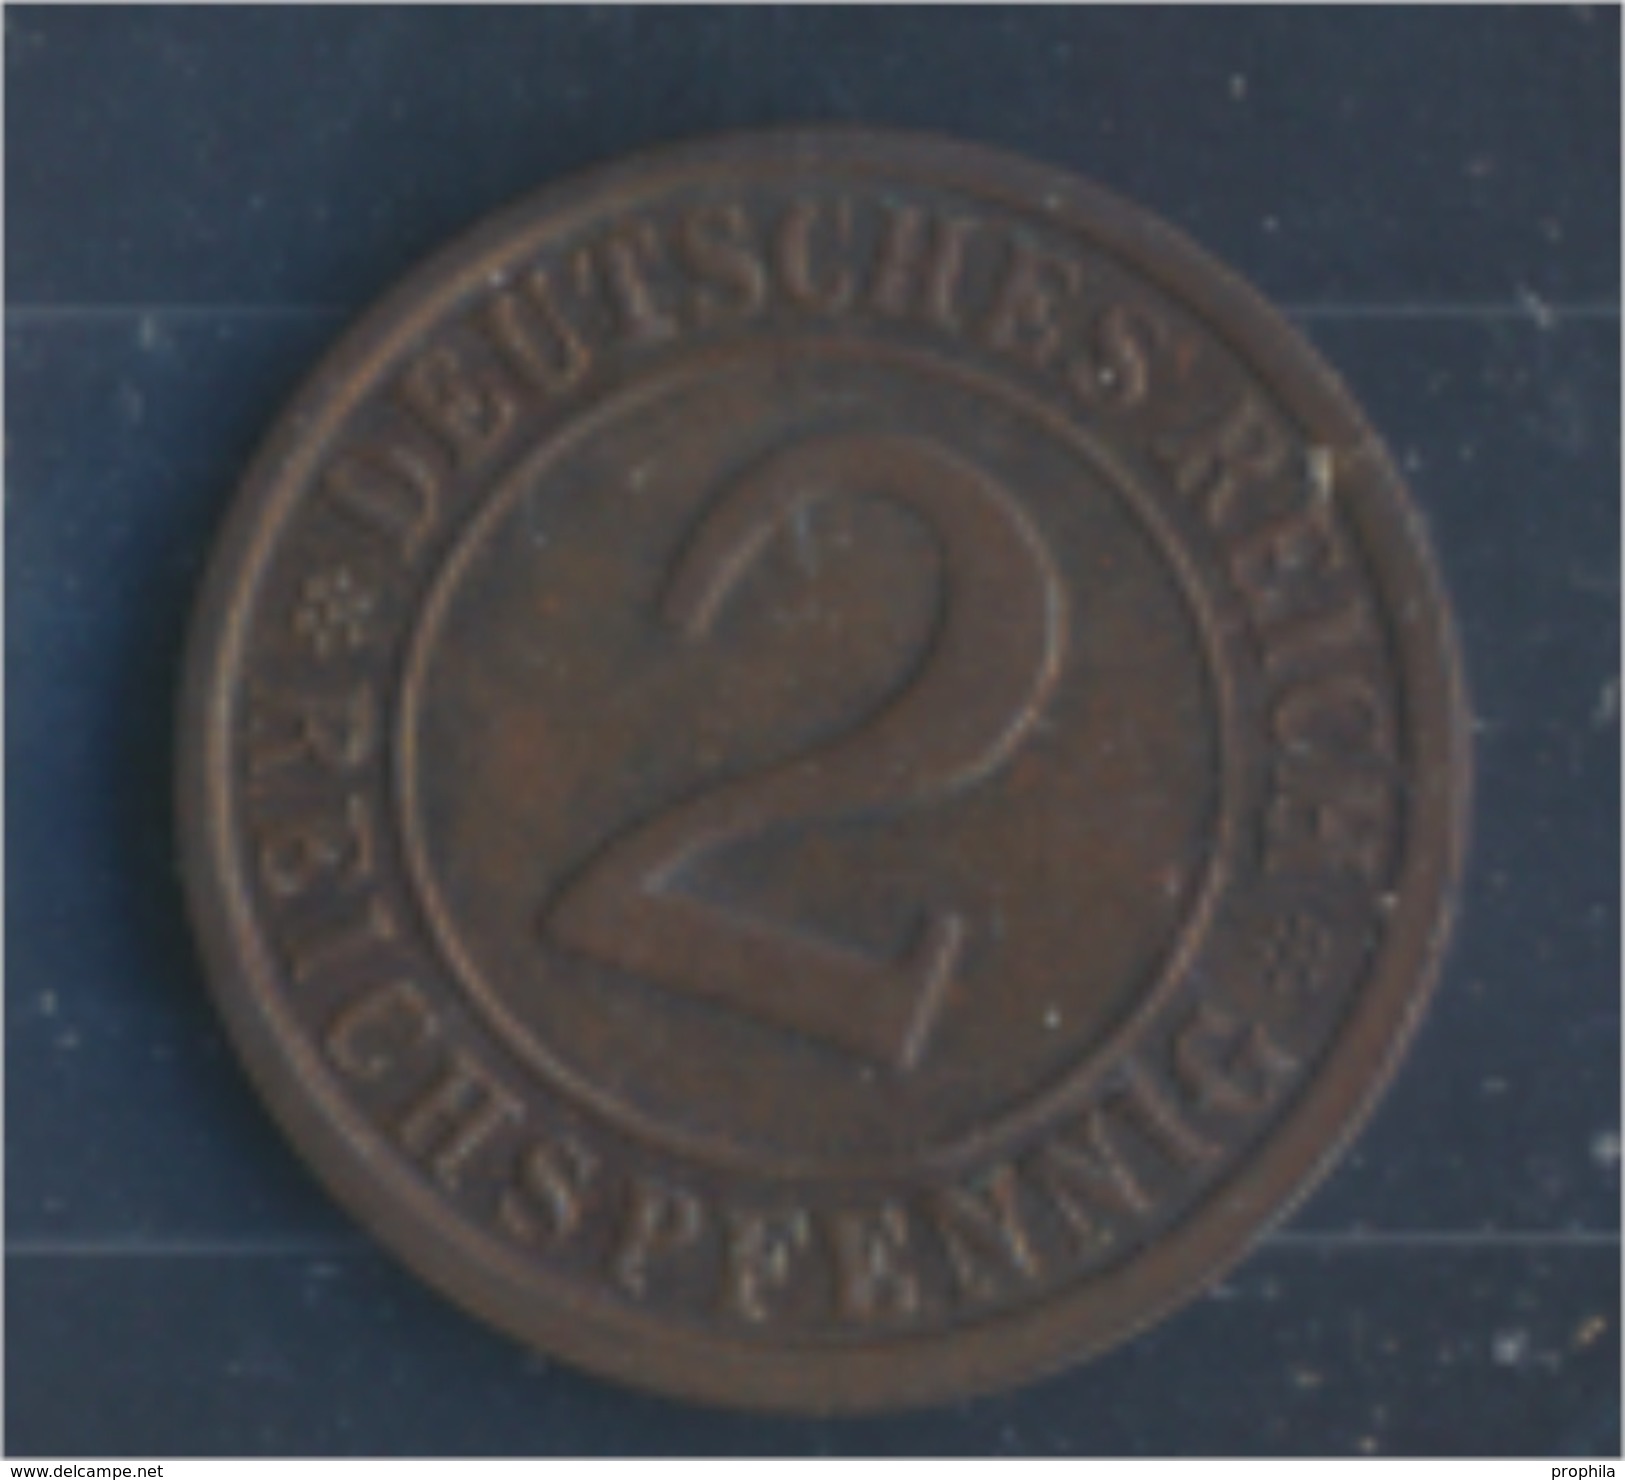 Deutsches Reich Jägernr: 314 1925 G Vorzüglich Bronze 1925 2 Reichspfennig Ährengarbe (7862421 - 2 Rentenpfennig & 2 Reichspfennig